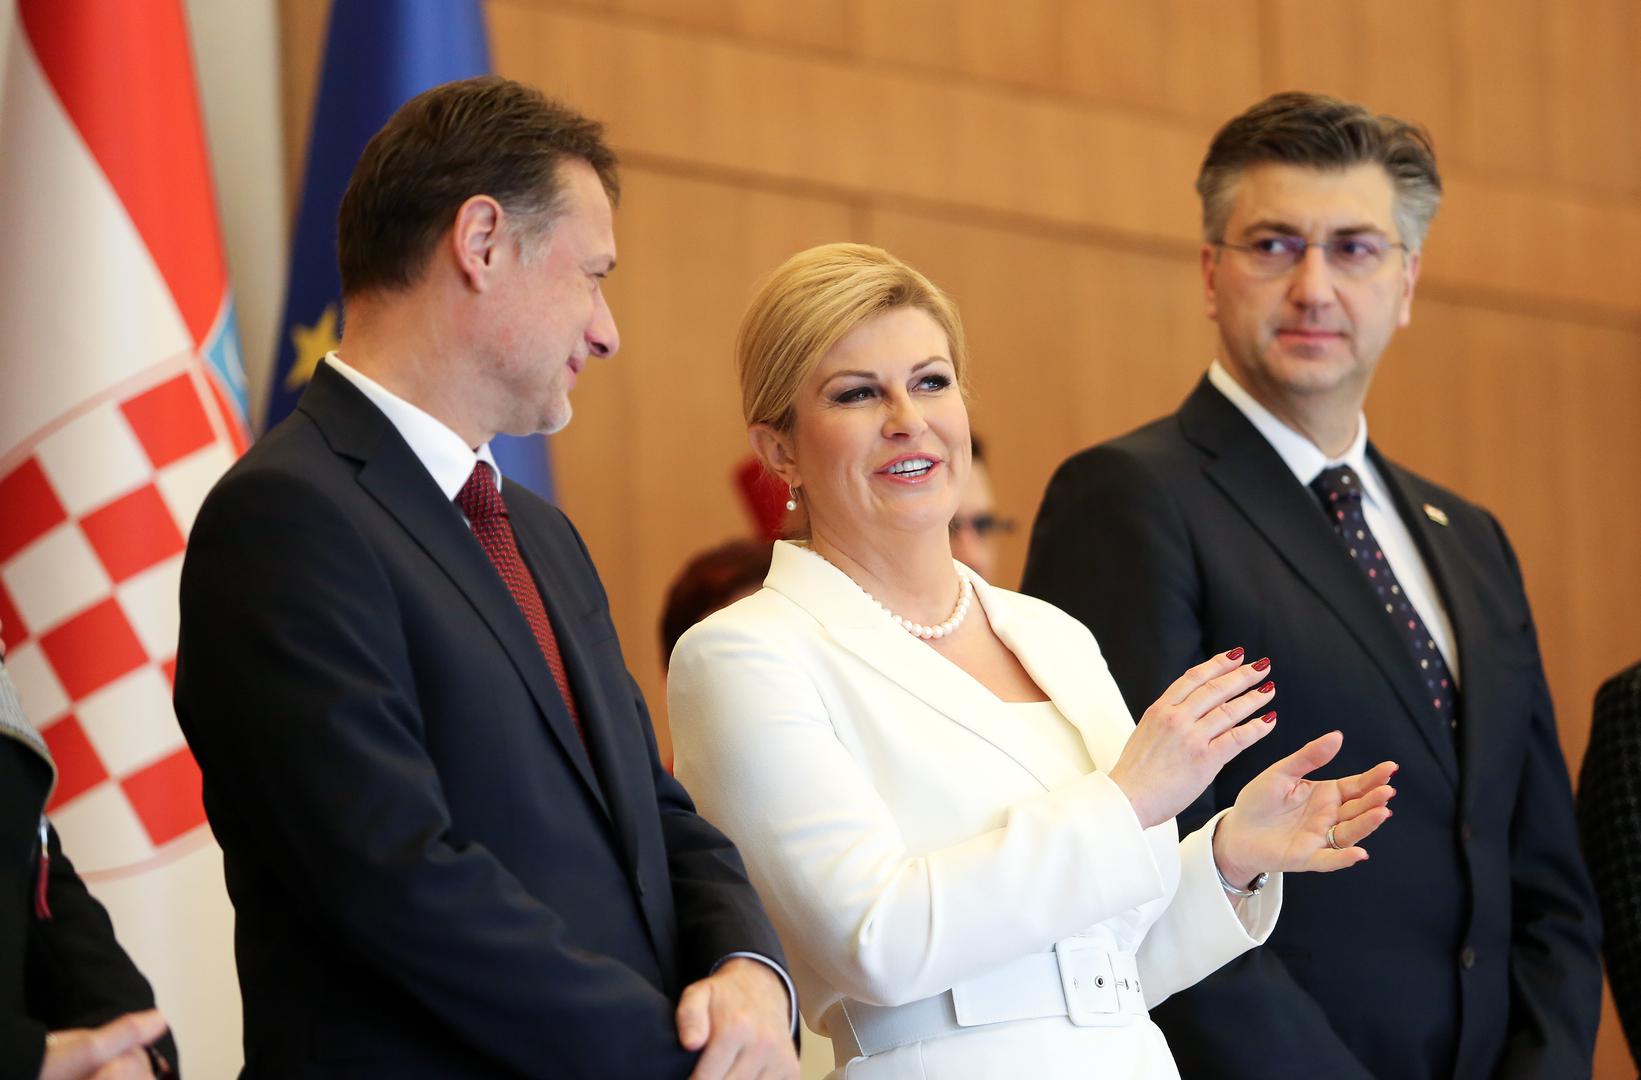 Bivša predsjednica Kolinda Grabar-Kitarović tijekom svog mandata često je bila u fokusu javnosti zbog svog odijevanja i imidža.